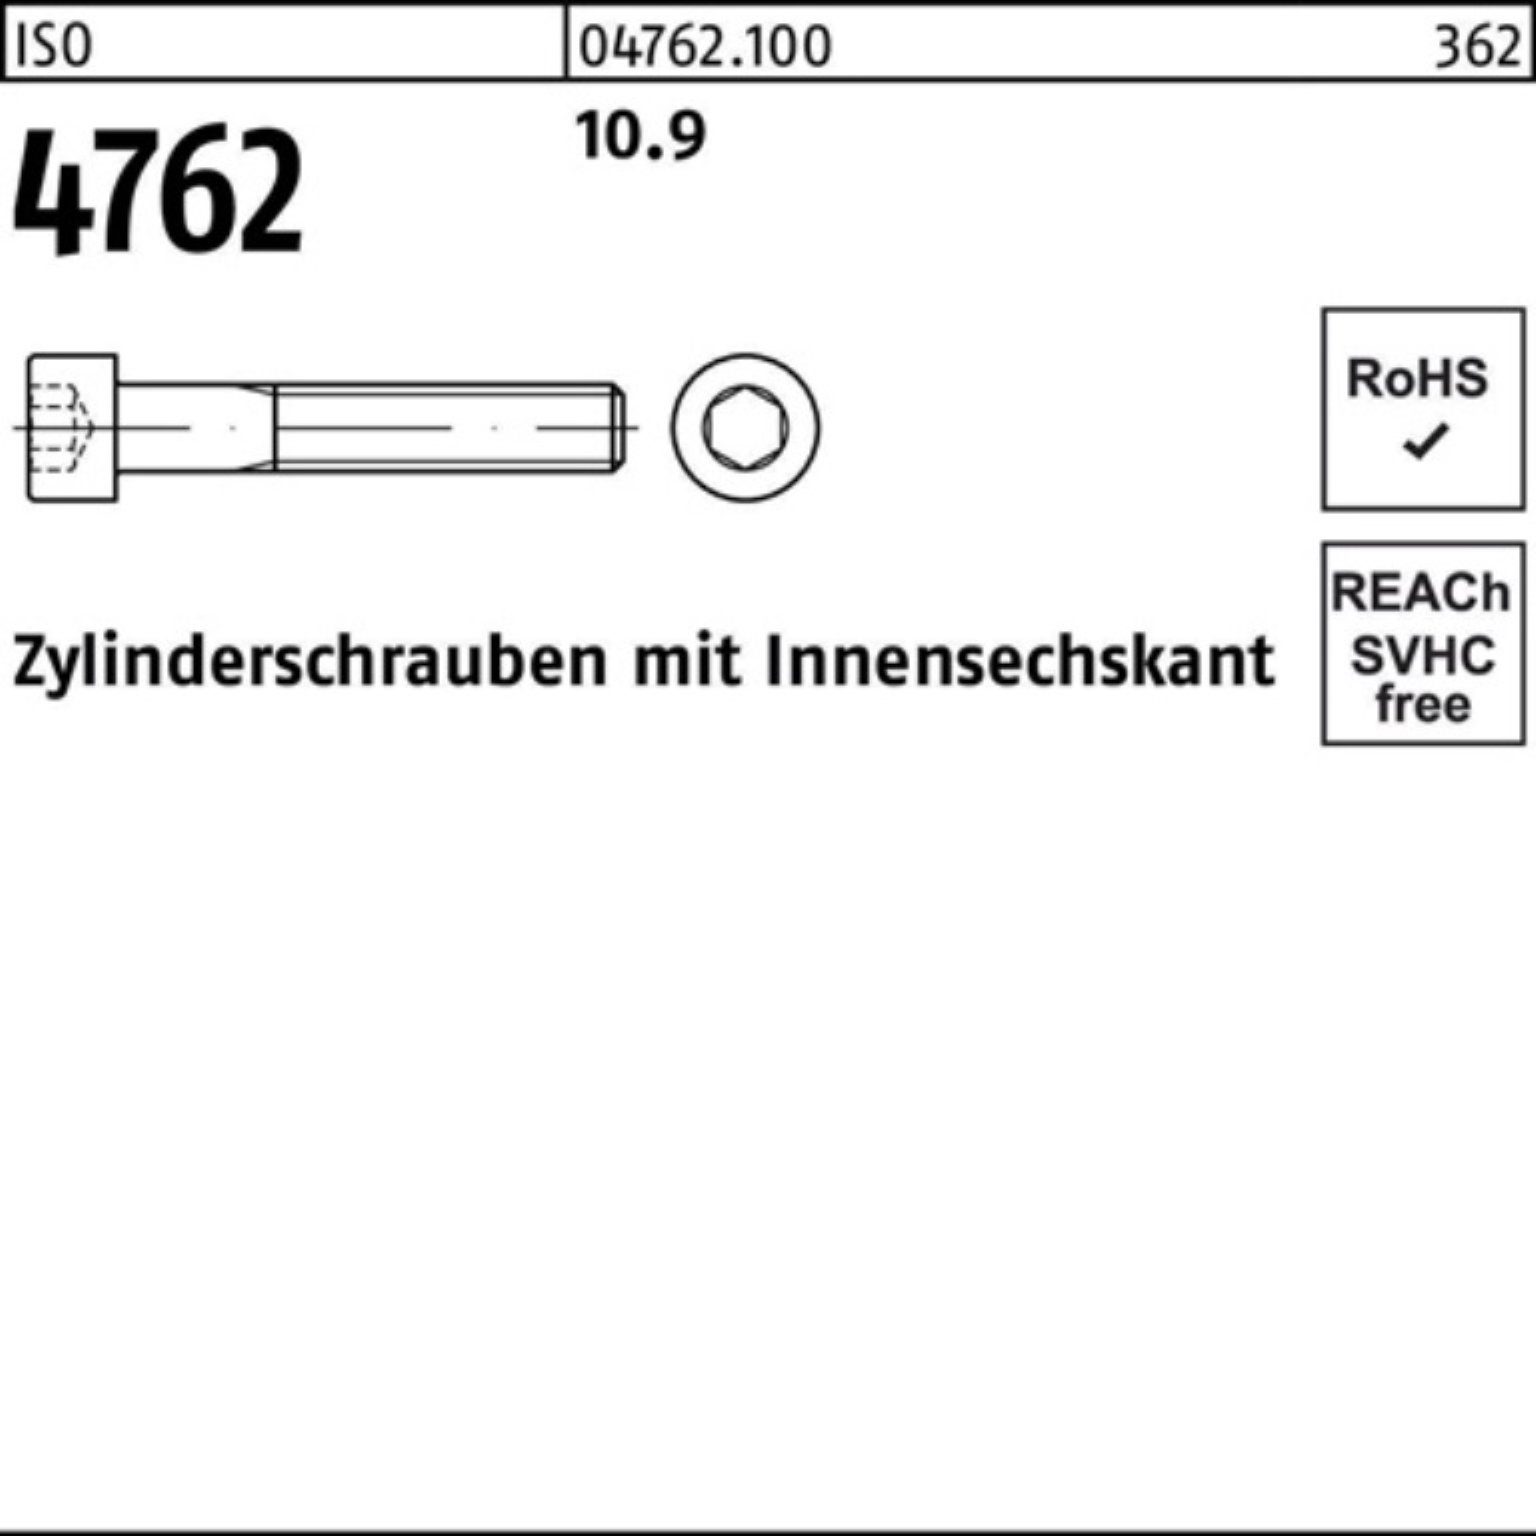 25 Innen-6kt Pack 500 M4x Reyher Zylinderschraube 4762 ISO Zylinderschraube 500er 10.9 Stück